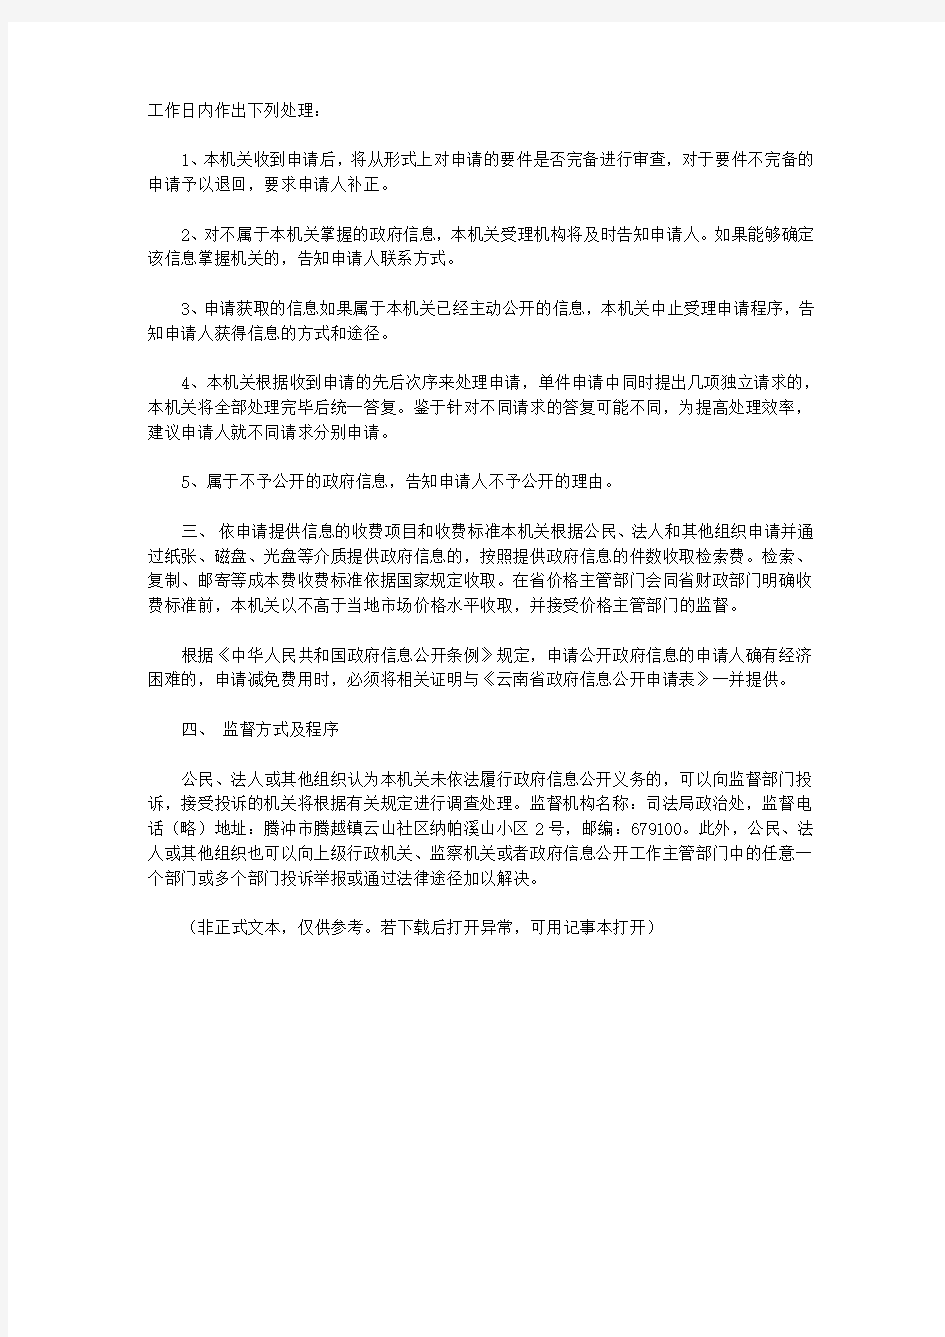 腾冲市司法局政府信息公开指南